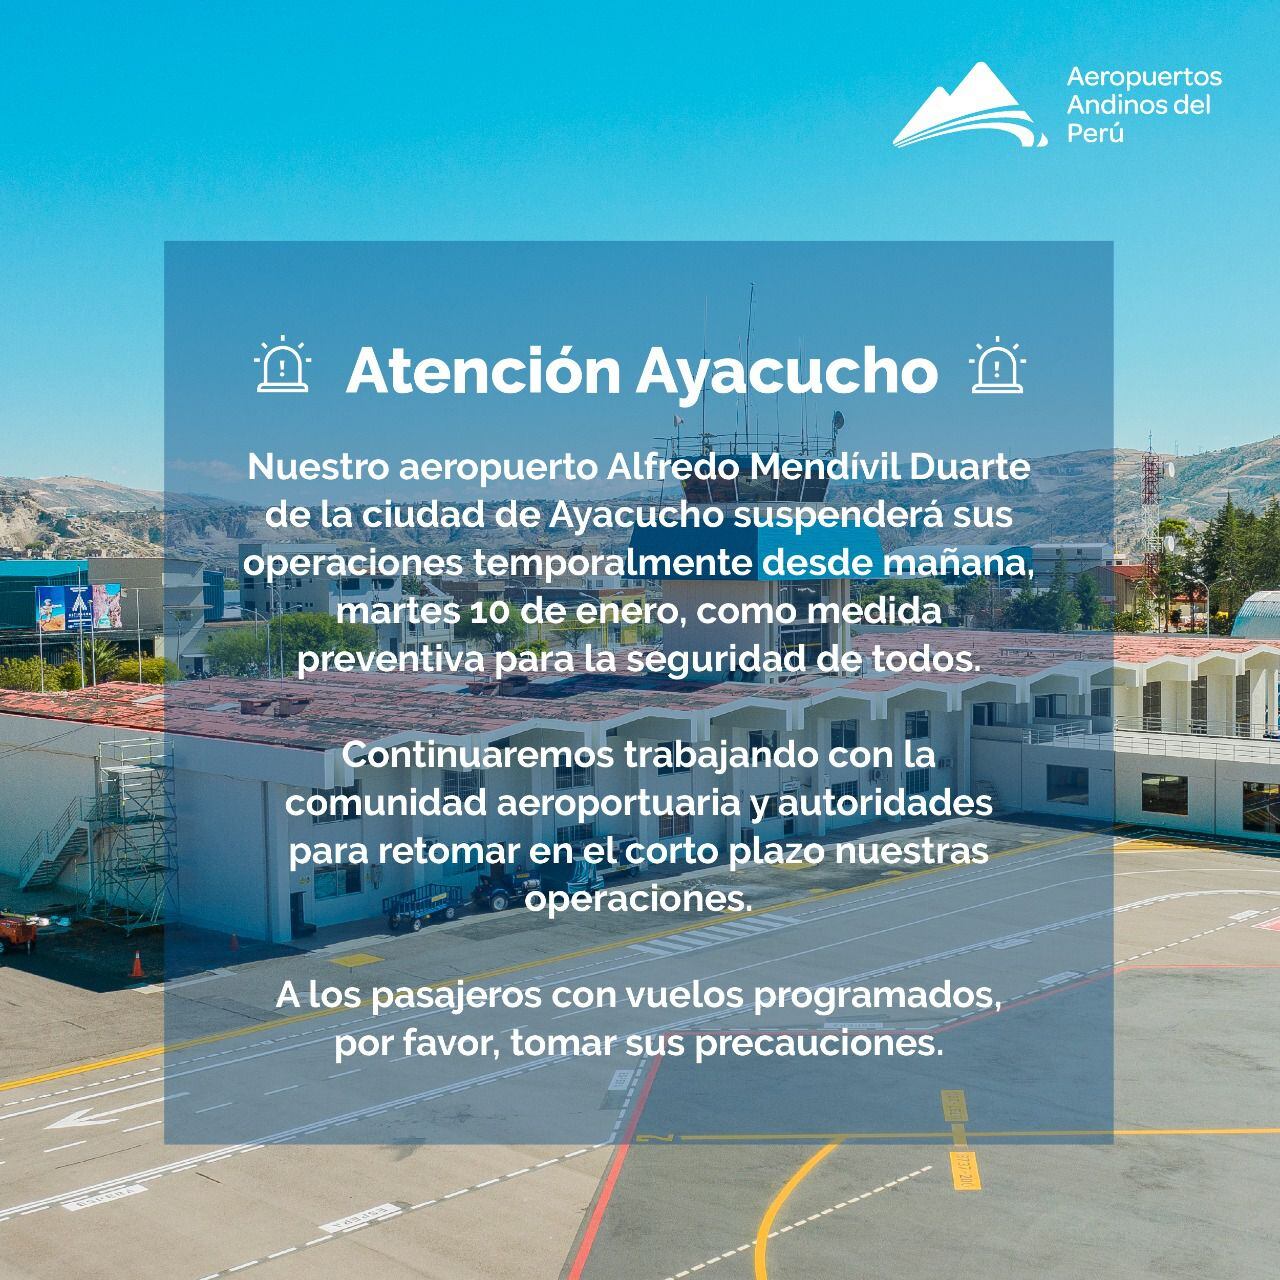 Comunicado de Aeropuertos Andinos del Perú sobre la suspensión de operaciones en el aeródromo de Ayacucho.